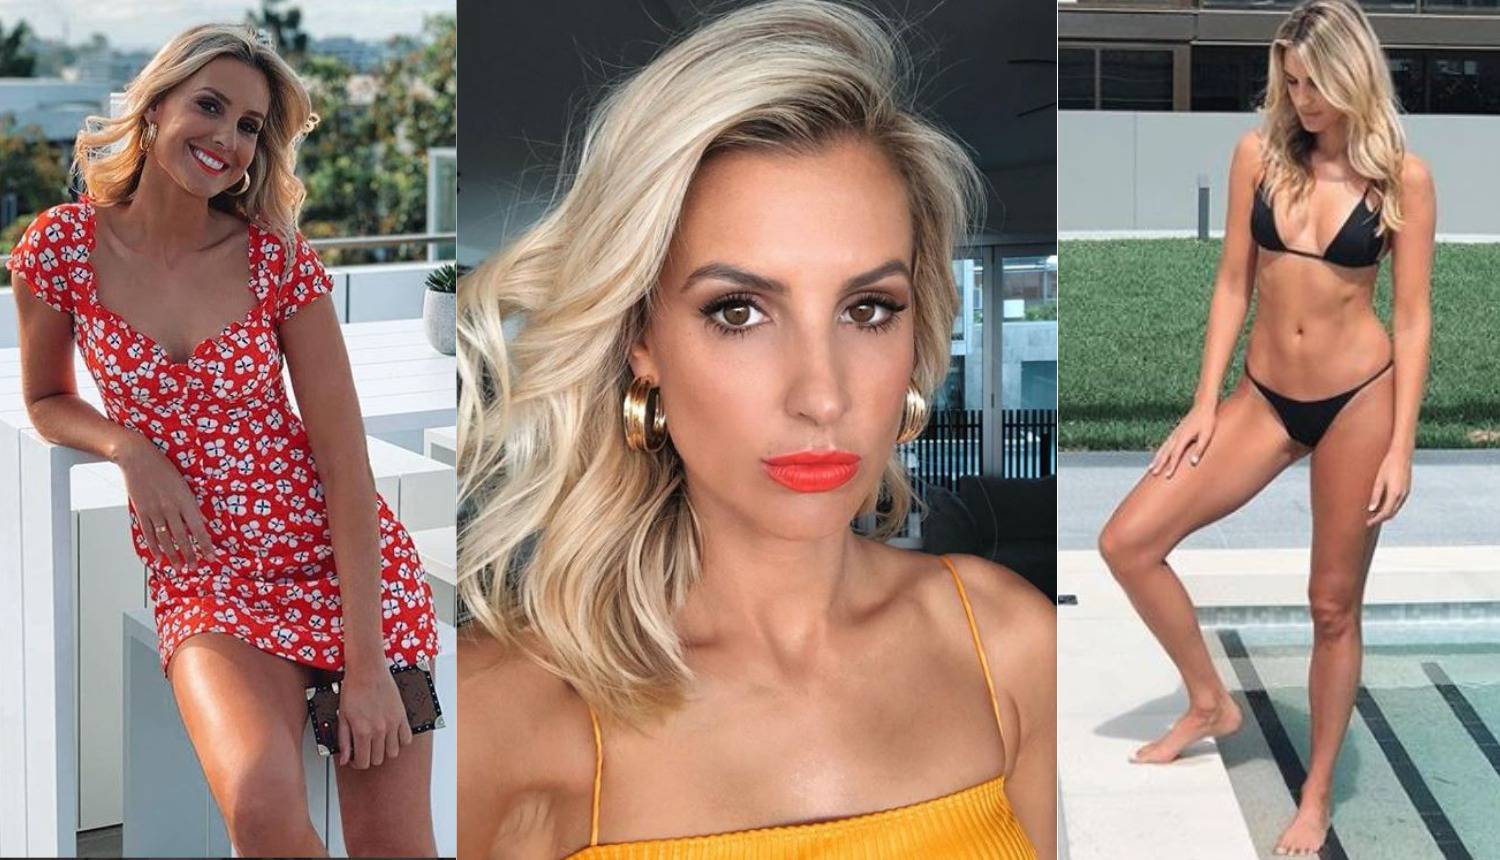 Laura Dundović: Bez hrvatskih gena ne bih bila Miss Australije